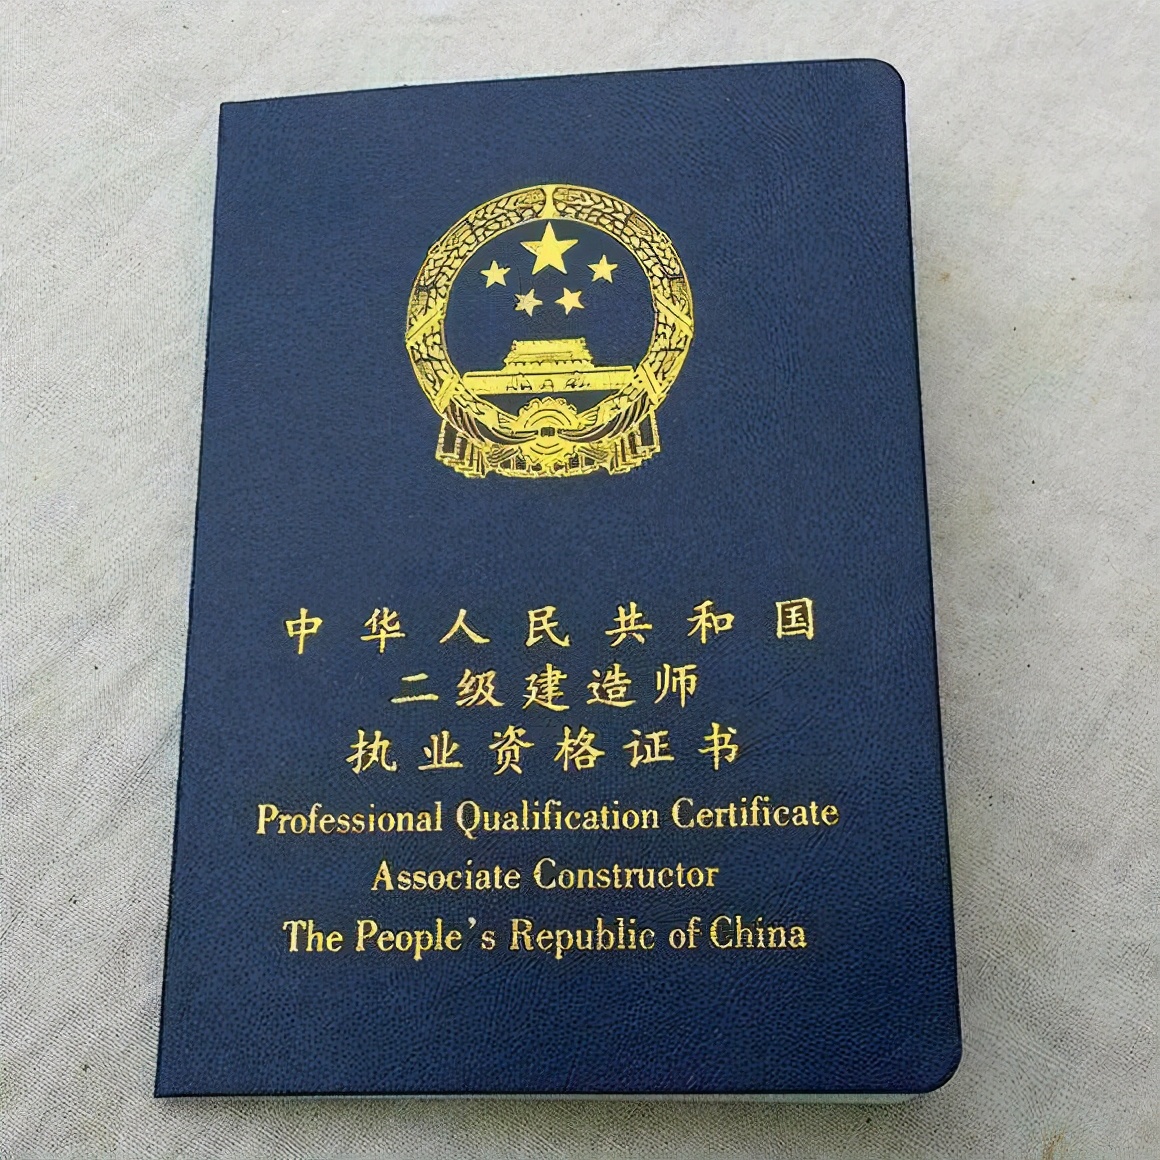 二建证书怎么注册？要求有哪些？附：上海二建证书注册详细流程